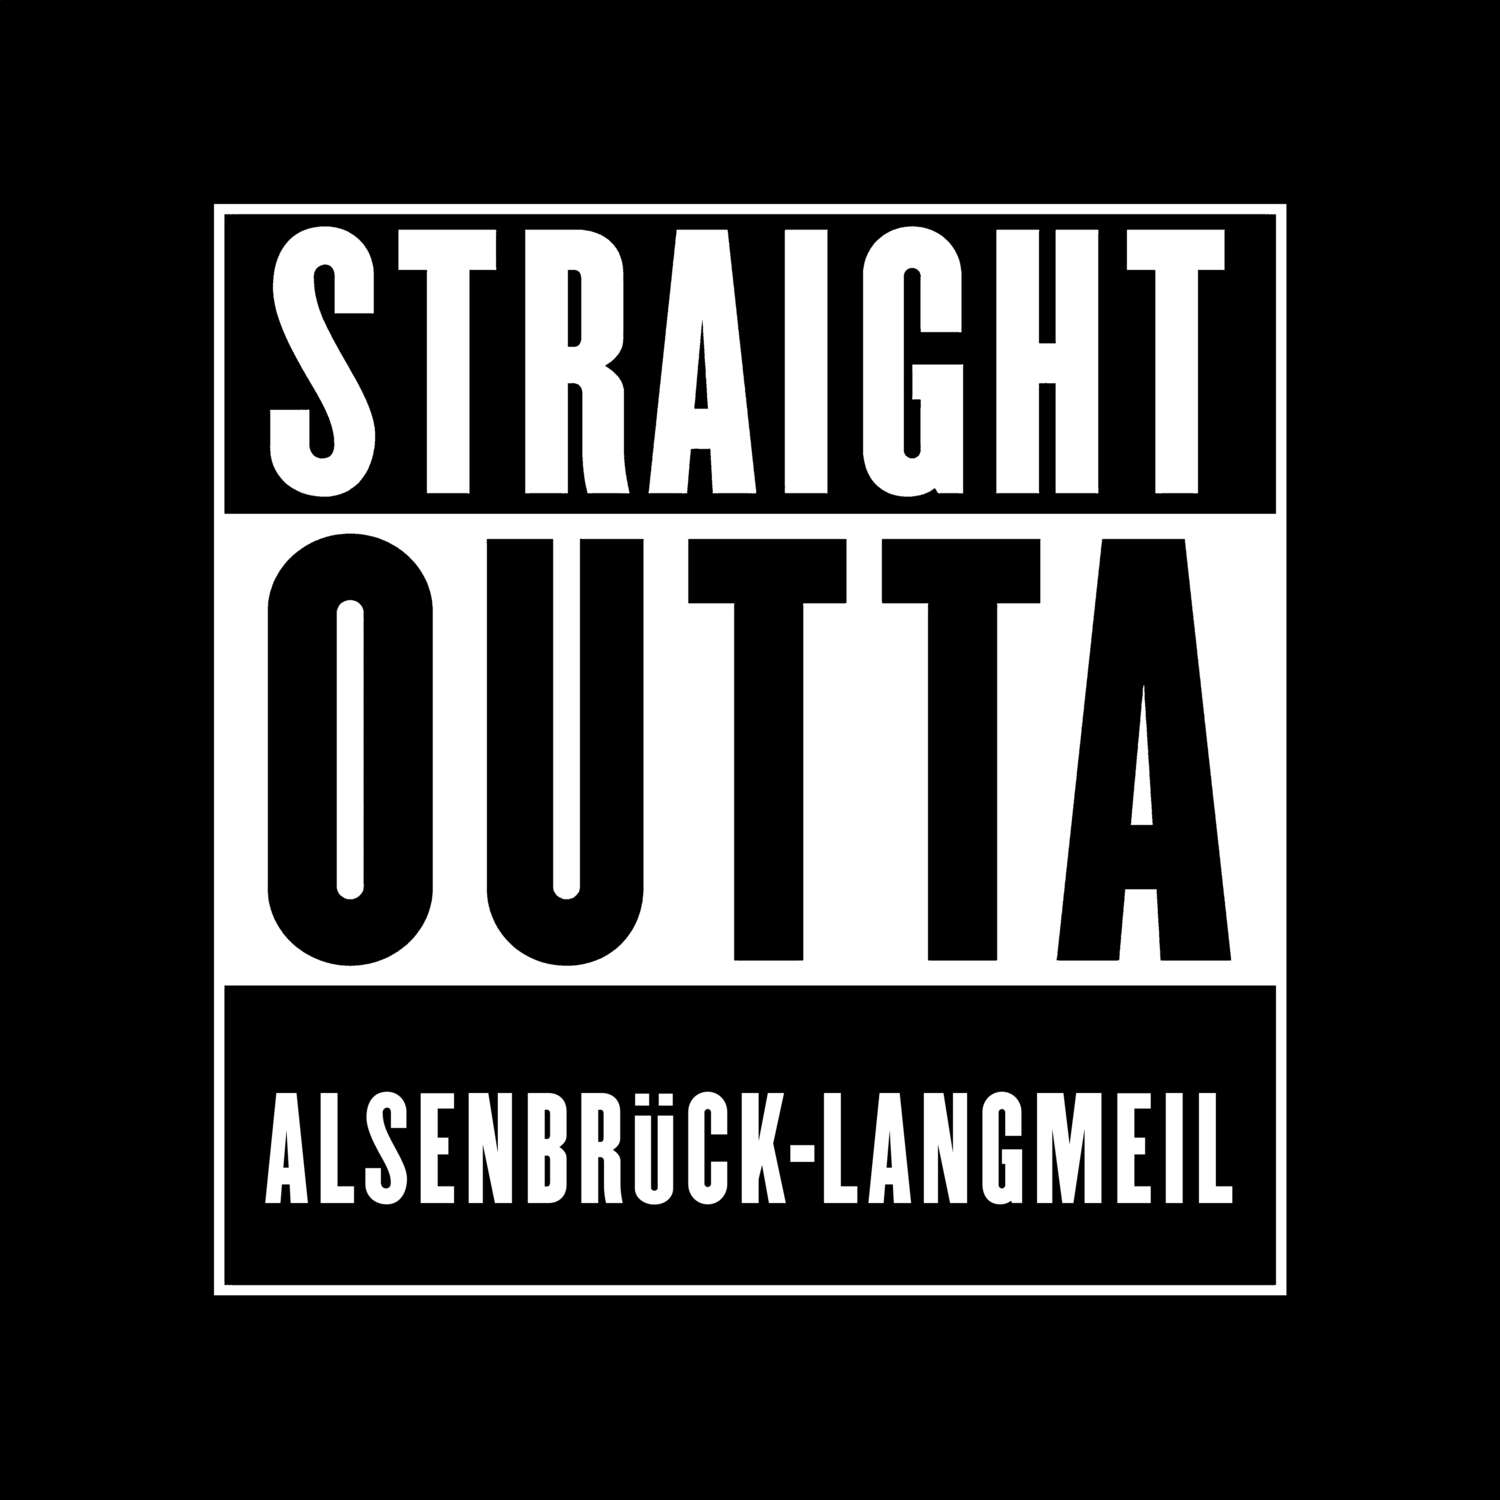 Alsenbrück-Langmeil T-Shirt »Straight Outta«